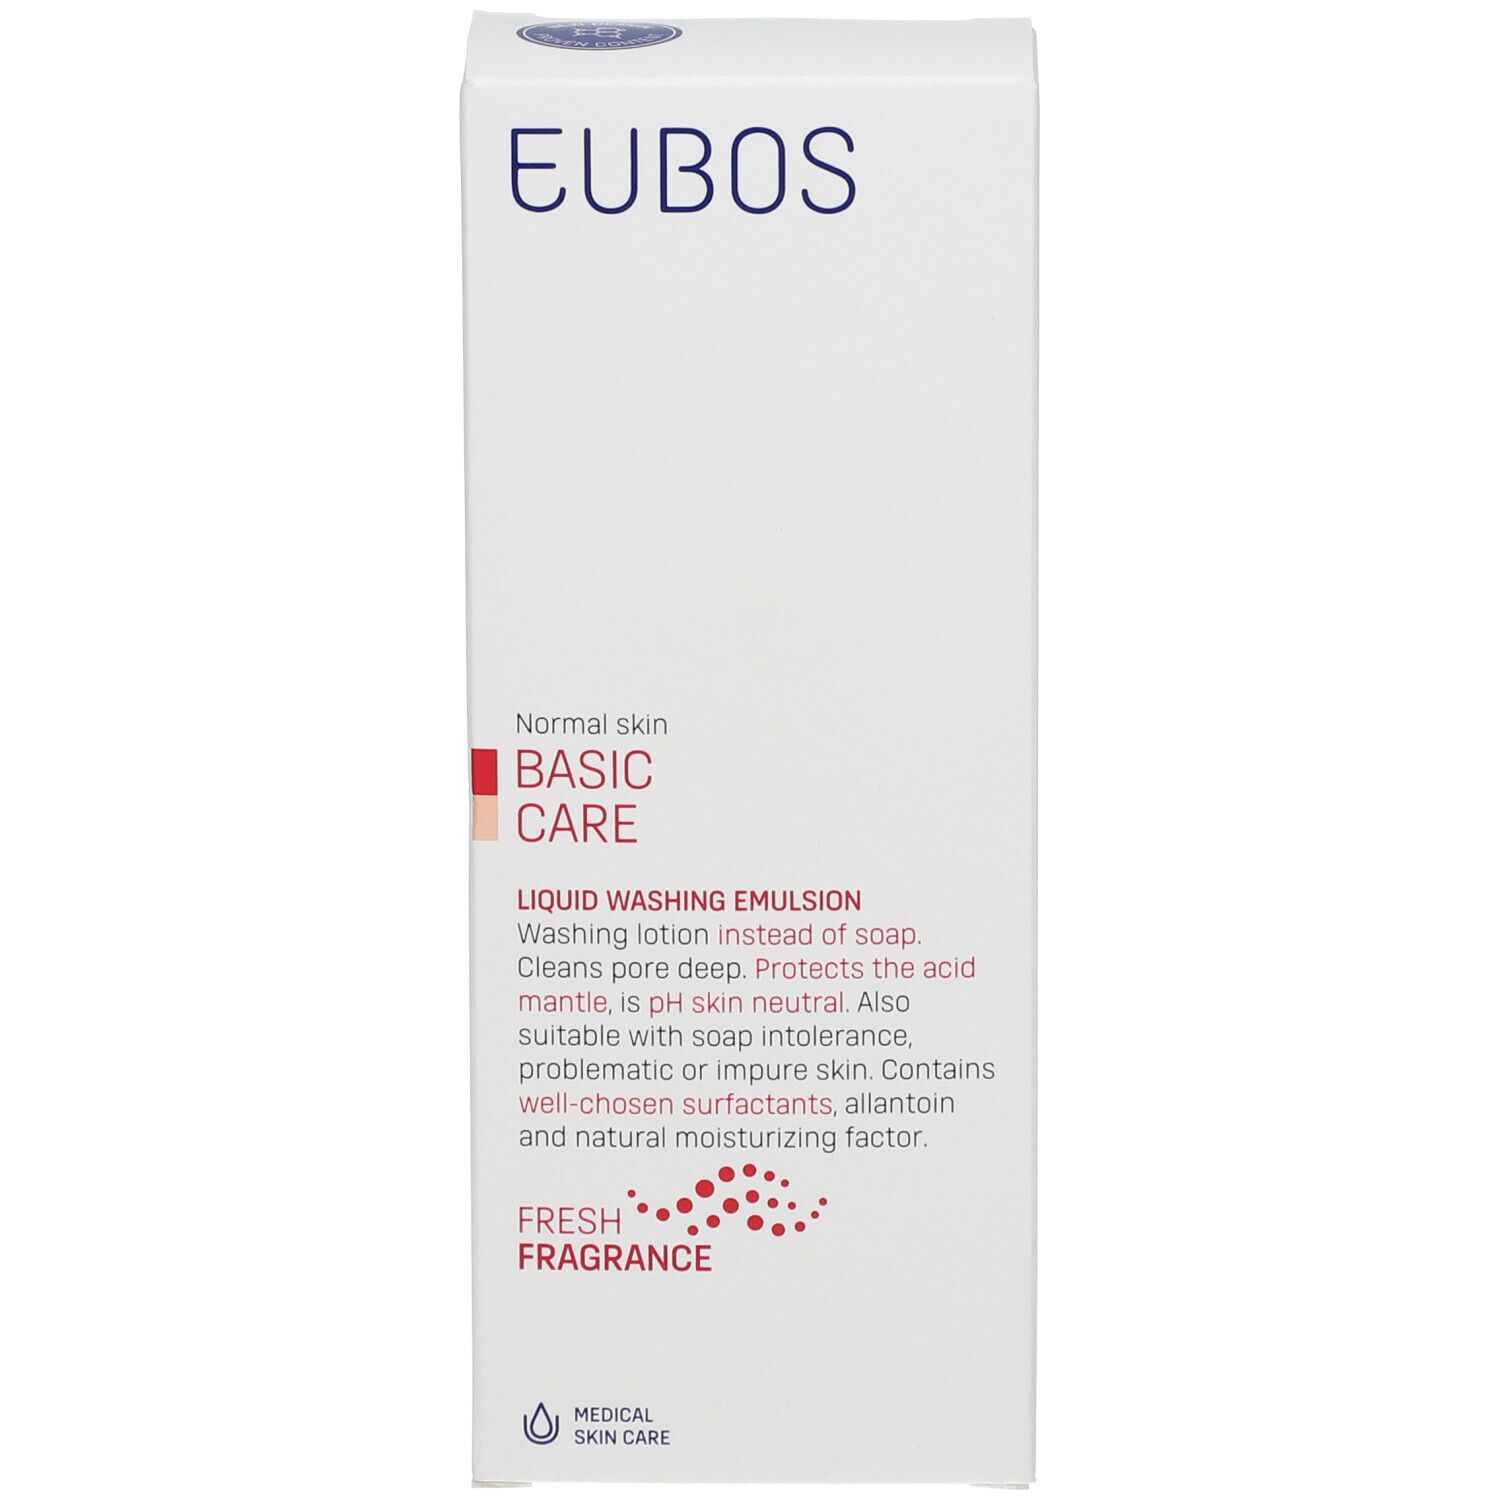 Eubos® Detergente Liquido con profumo